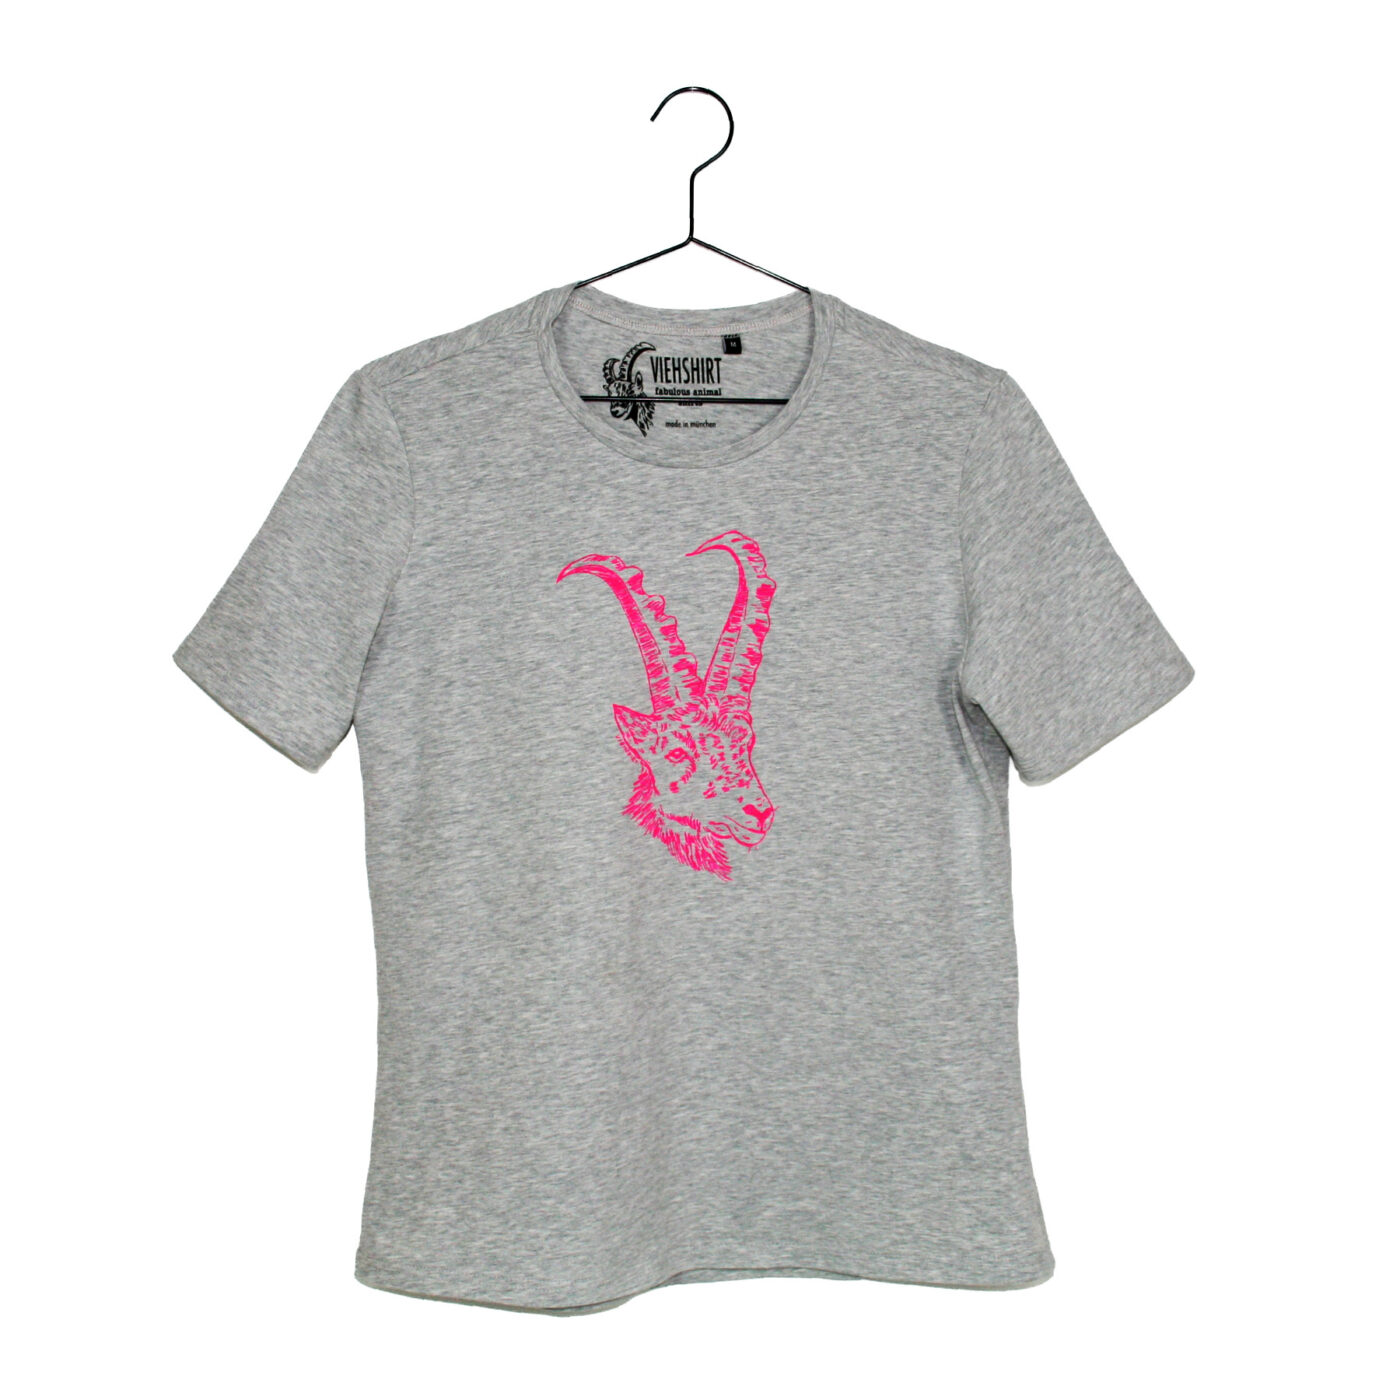 Graumeliertes T-Shirt mit aufgedrucktem Steinbock-Kopf in neon-pink